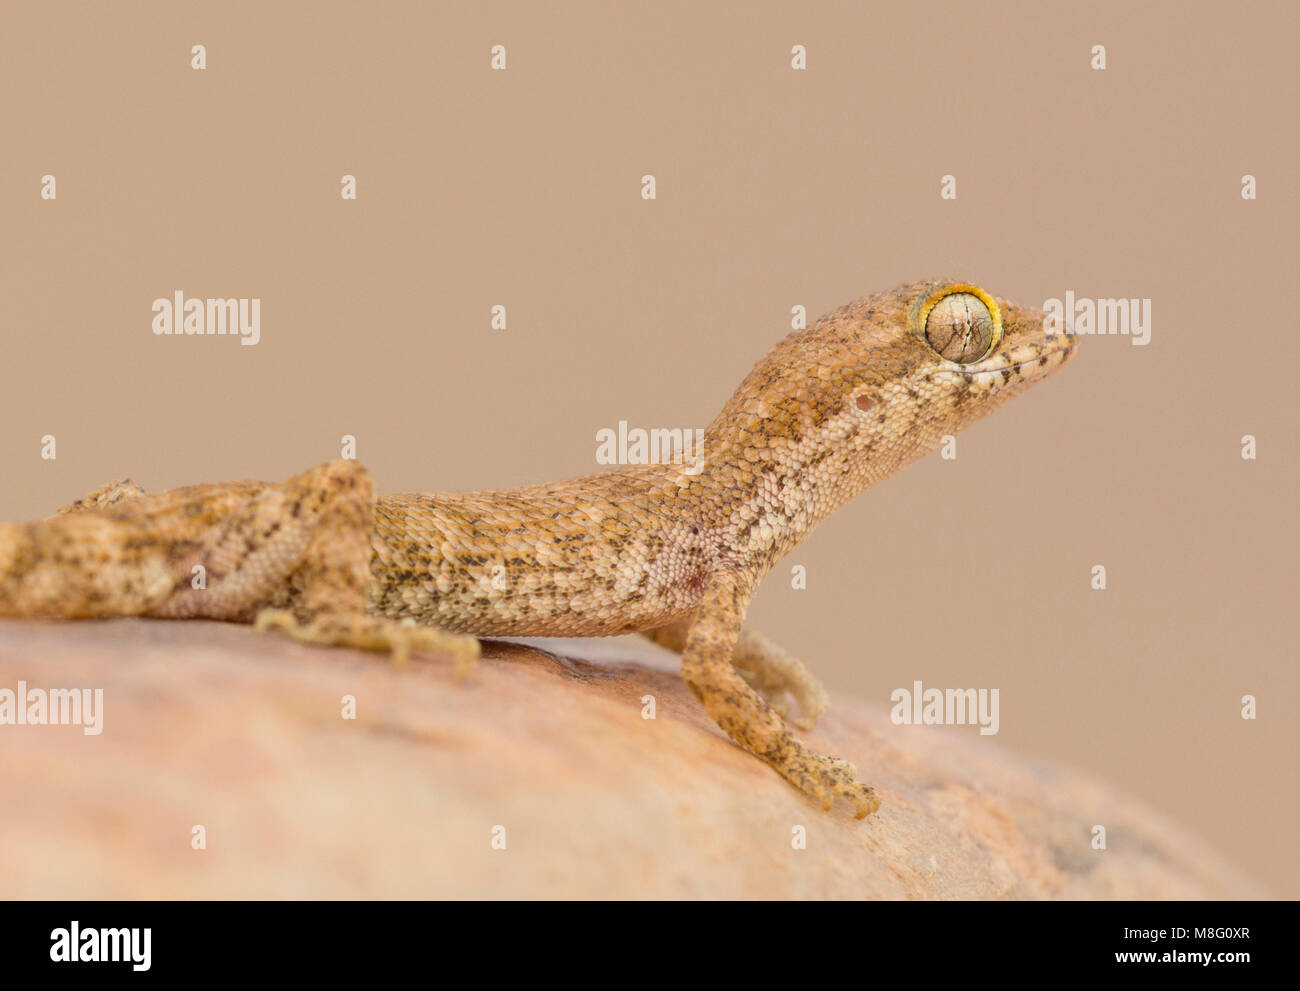 Sabbia algerino Gecko (Tropiocolotes algericus) nell ovest del deserto del Sahara in Marocco. Foto Stock